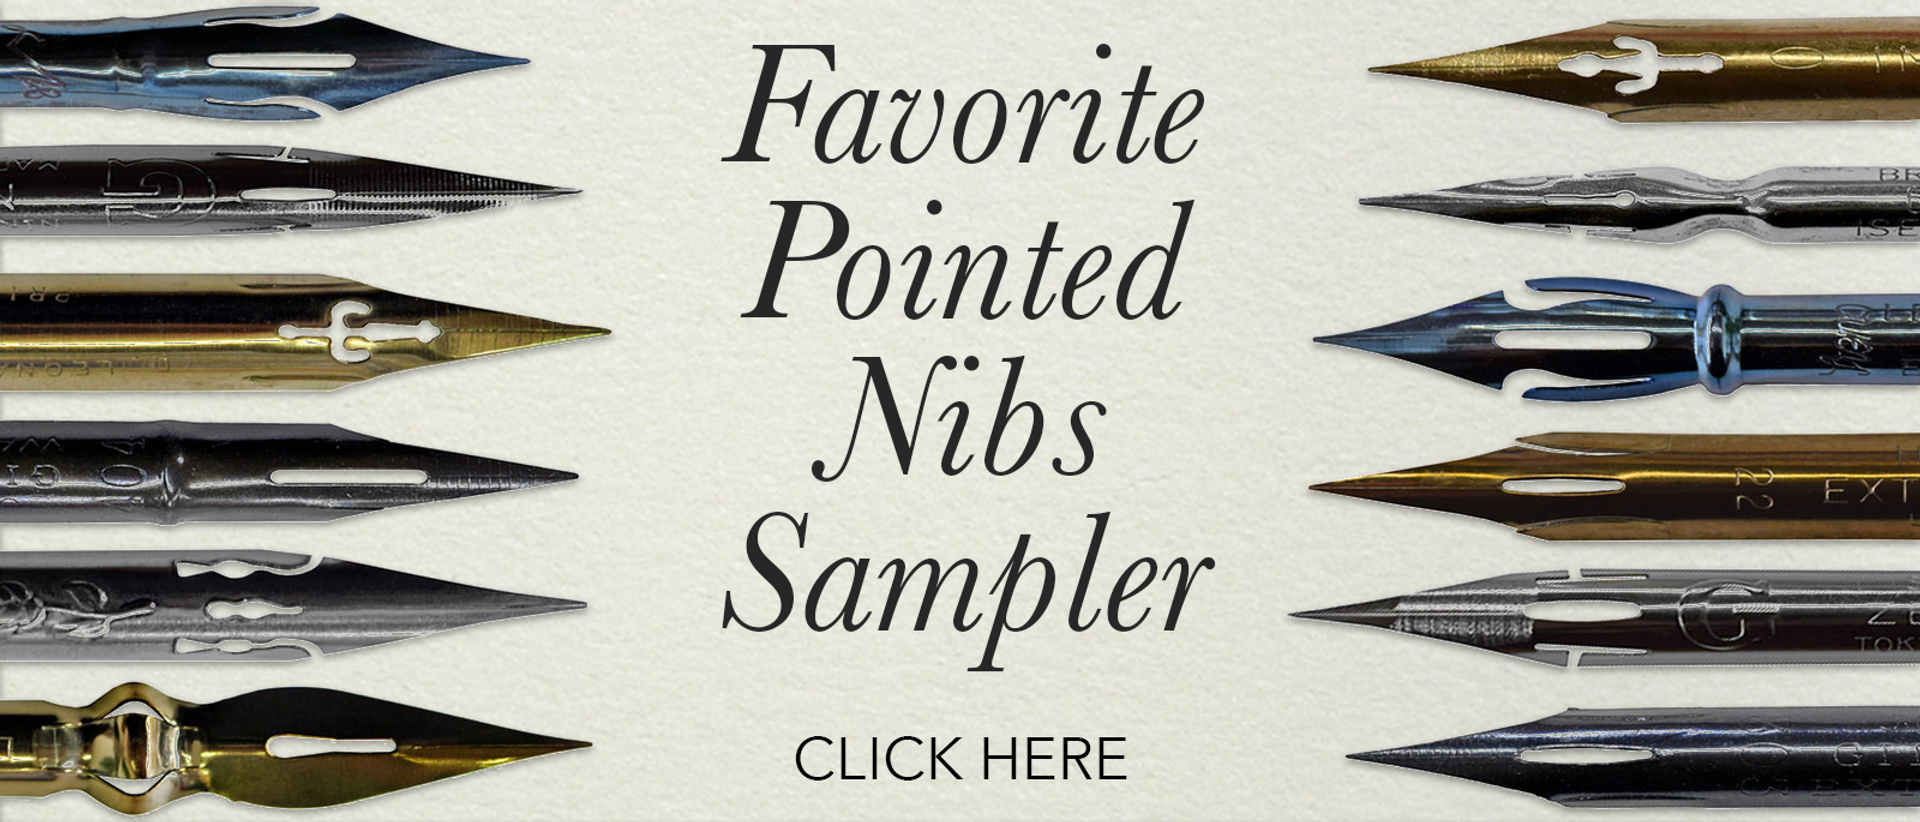 G-Pen Nib Sampler - John Neal Books